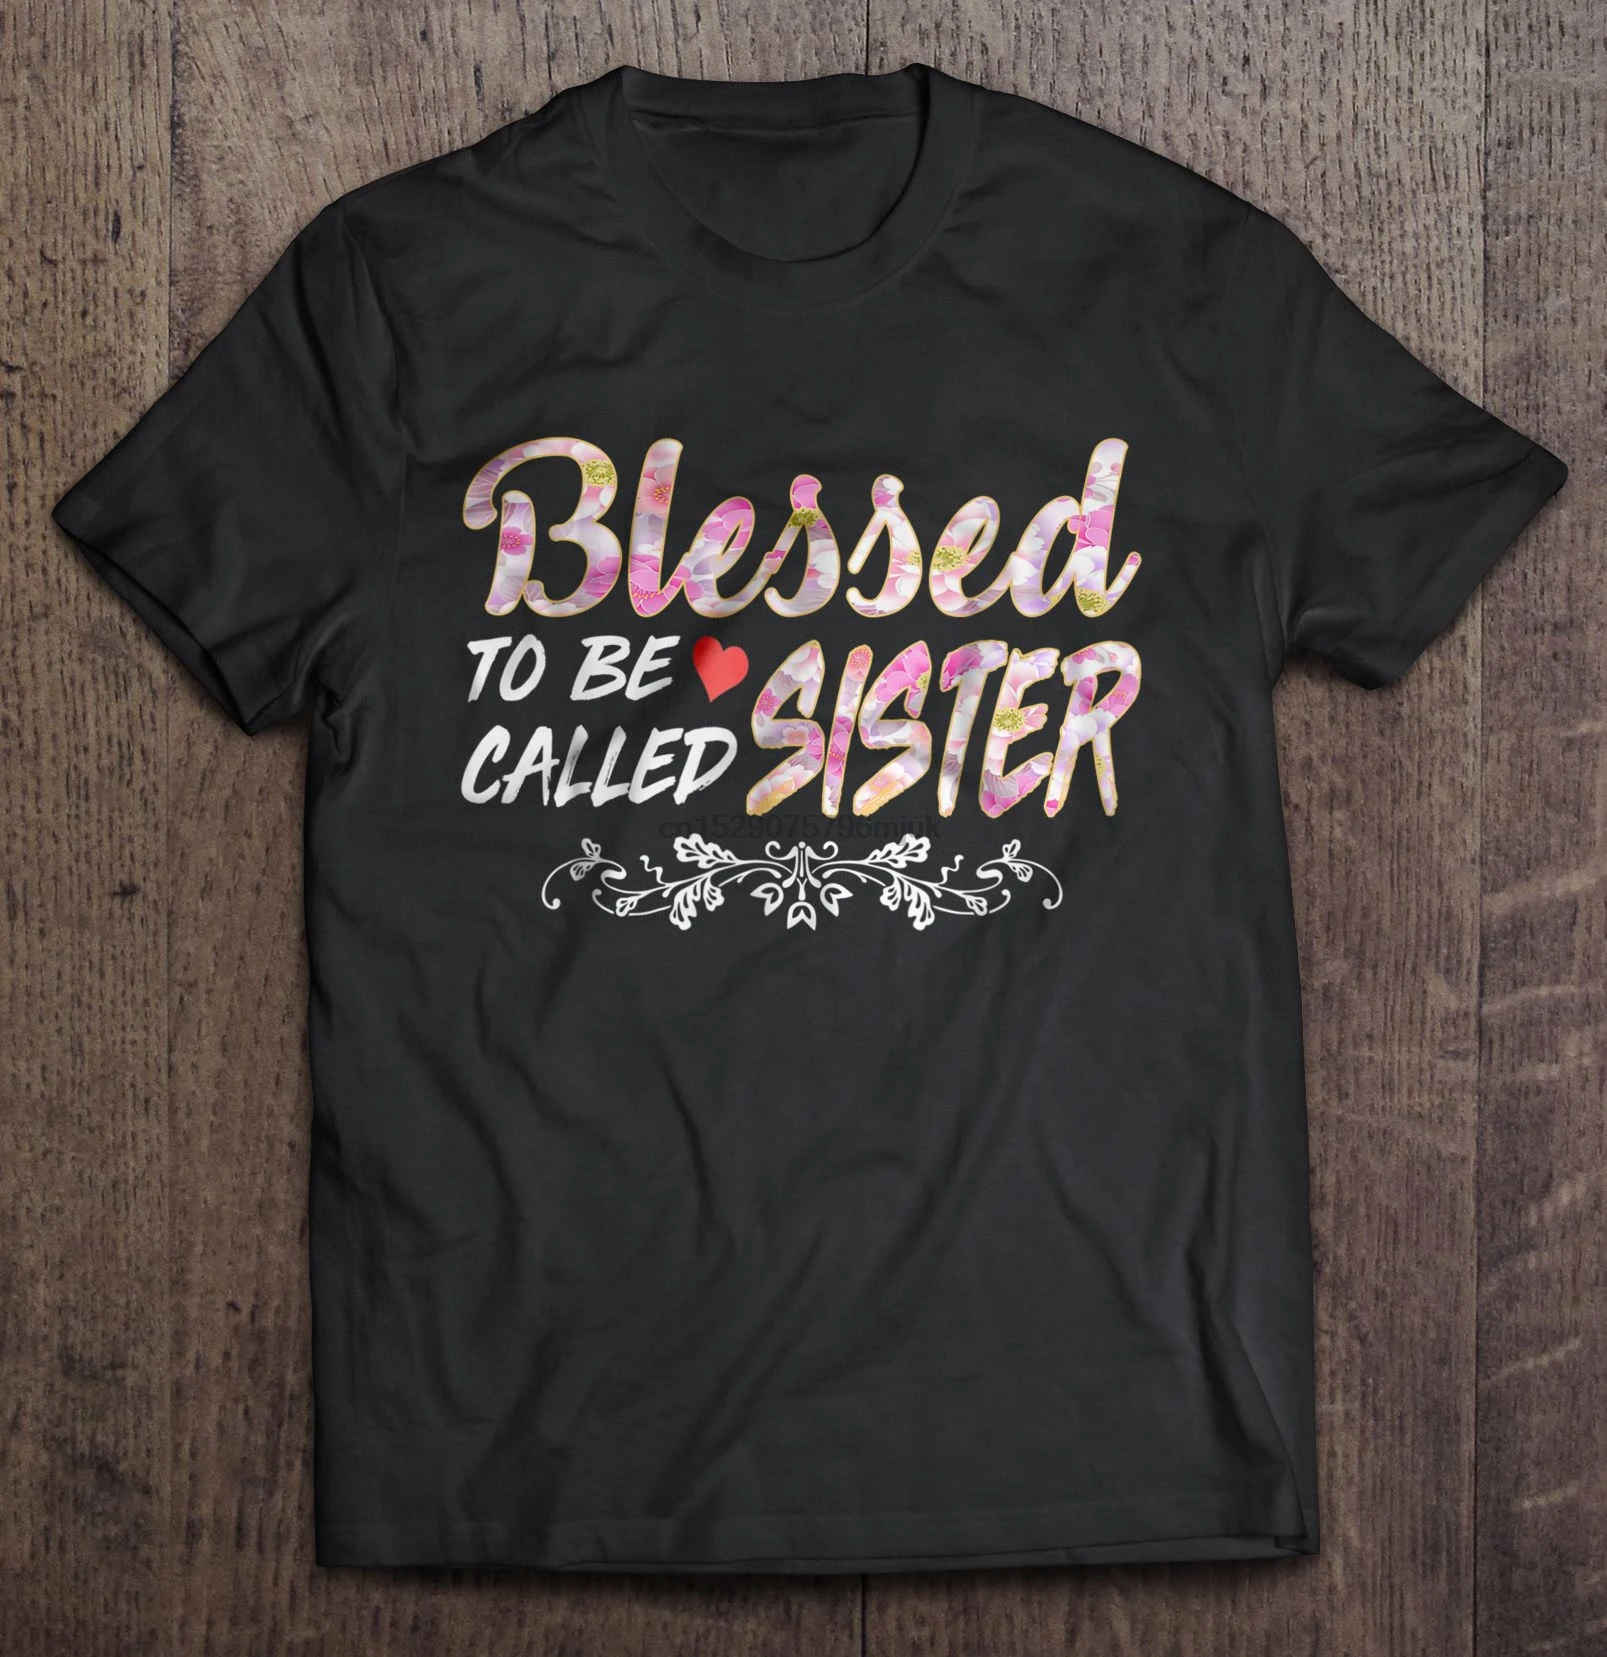 Фото Мужская футболка с надписью Blessed To Be call Sister женская футболка| - купить